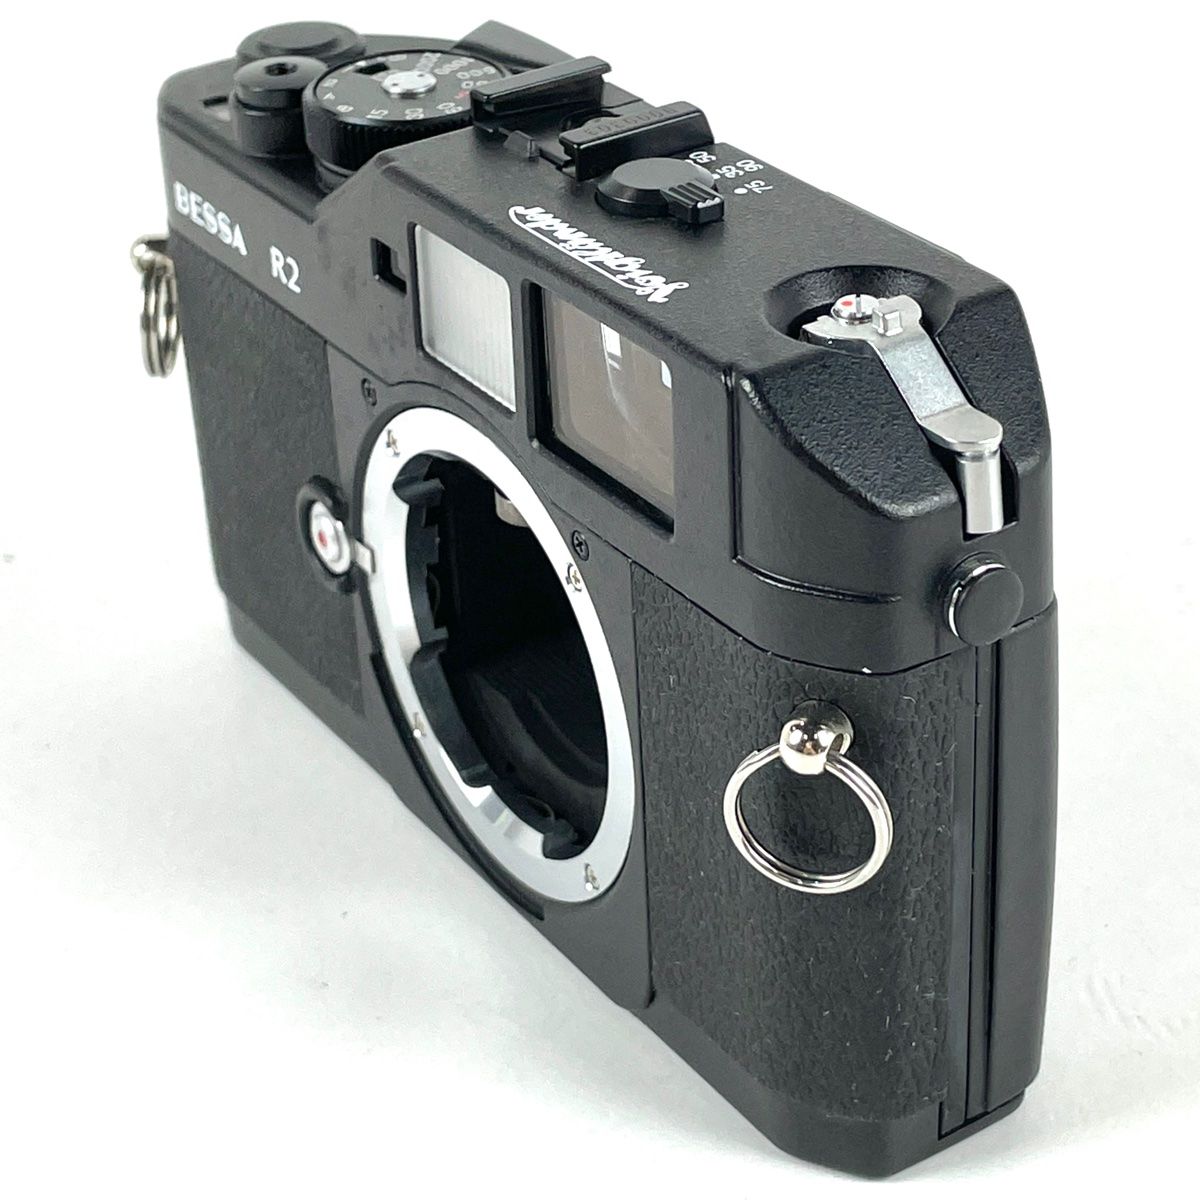 Voigtlander BESSA R2 レンジファインダーカメラ